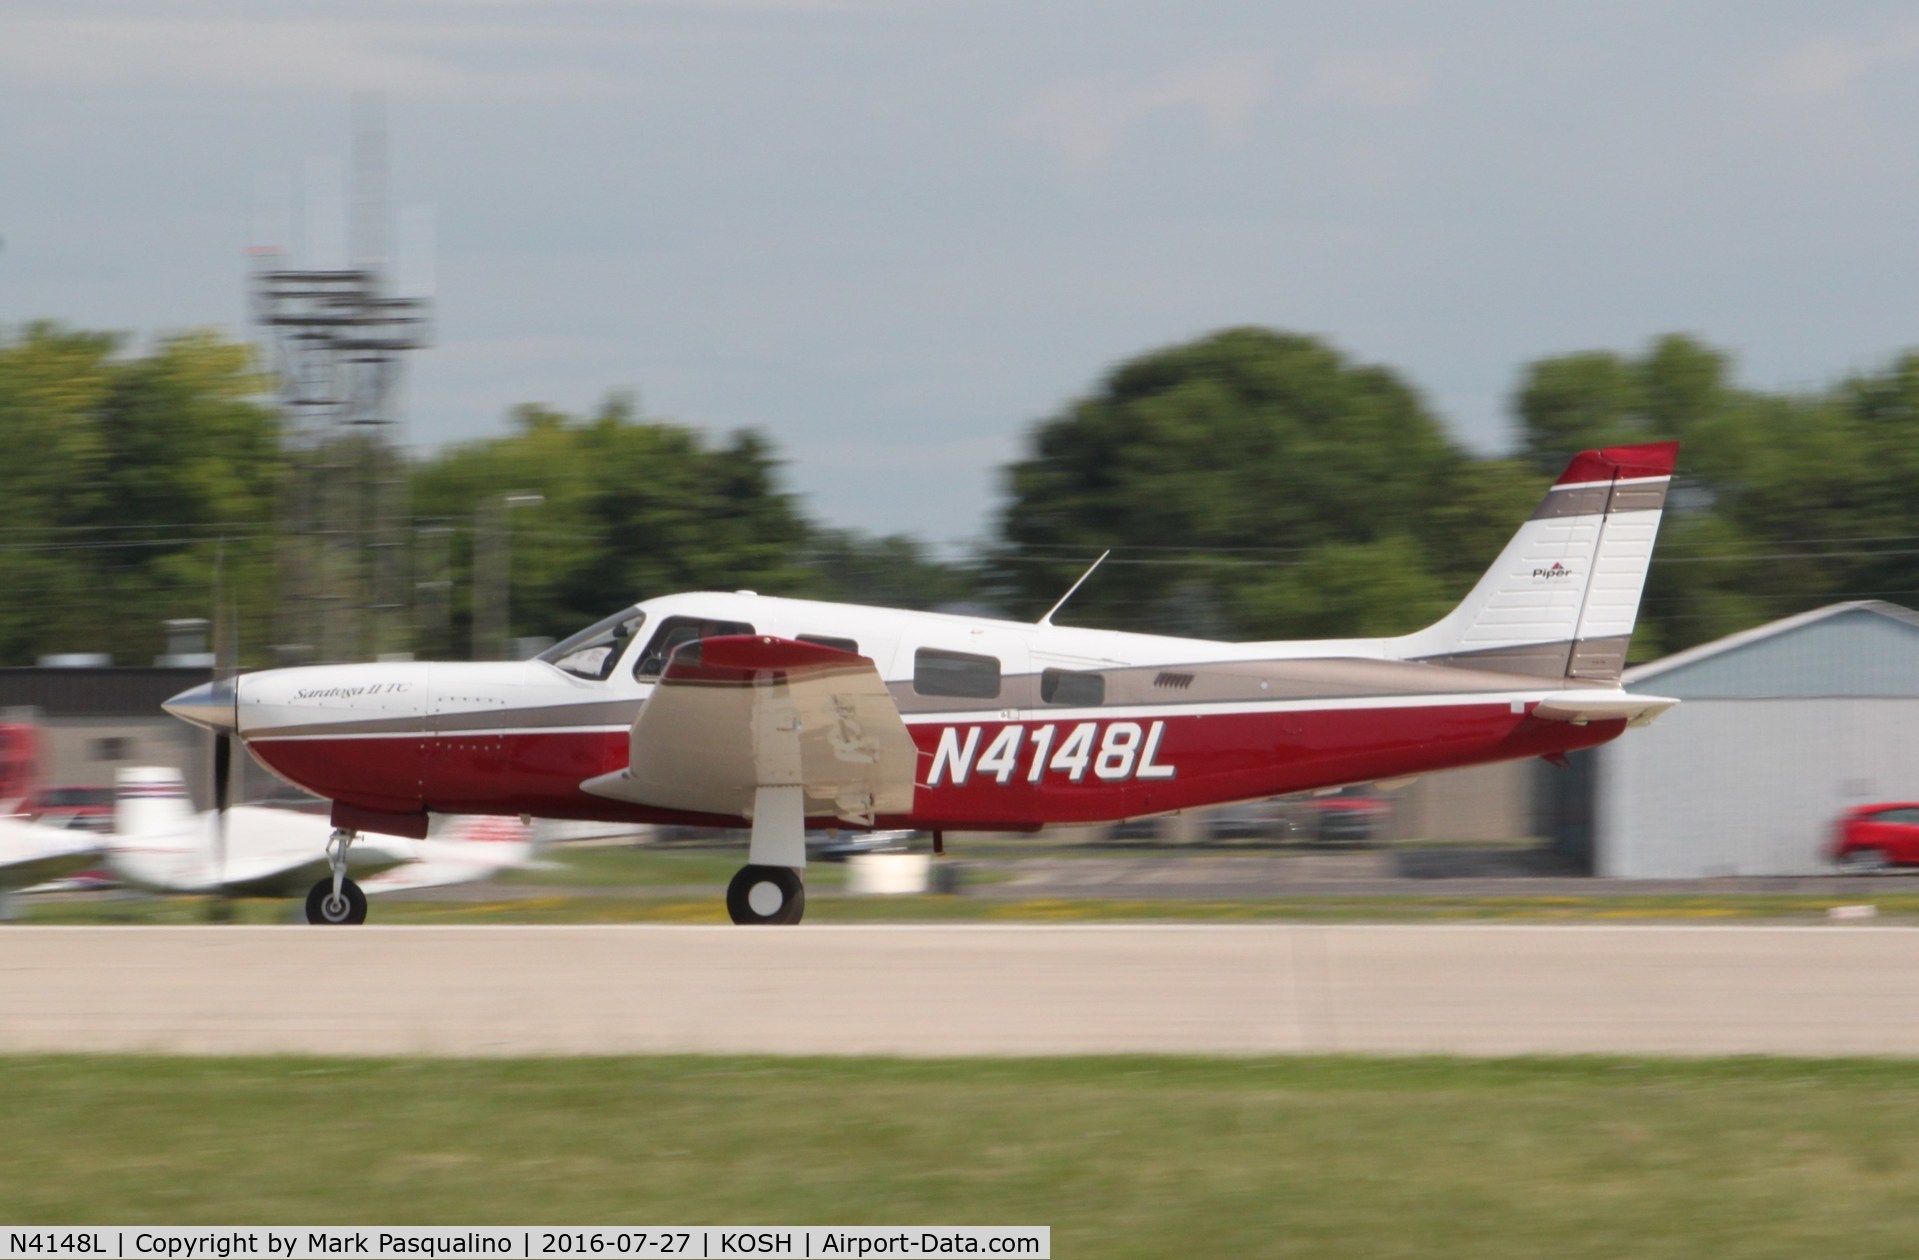 N4148L, 1999 Piper PA-32R-301T Turbo Saratoga C/N 3257084, Piper PA-32R-301T